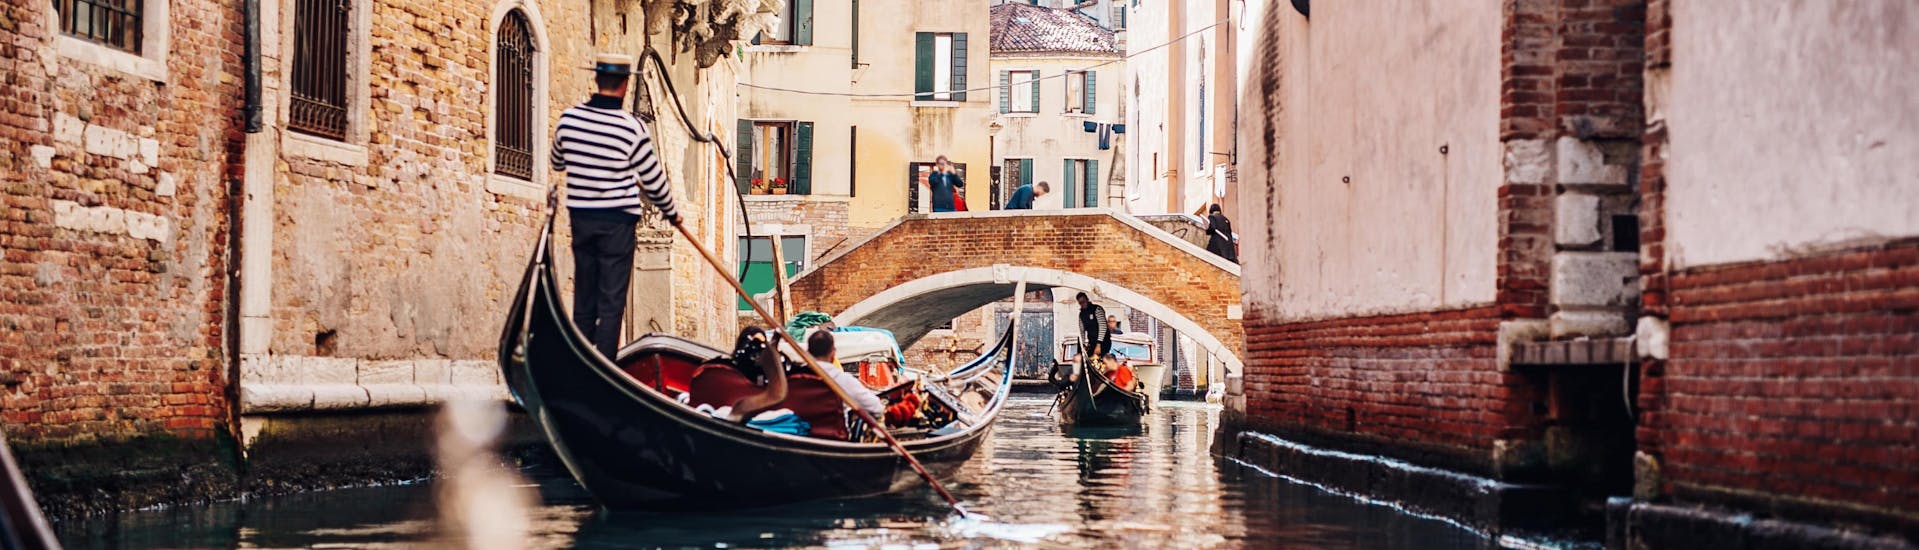 Un gondoliere sta remando la barca attraverso uno stretto canale durante un giro in gondola a Venezia.